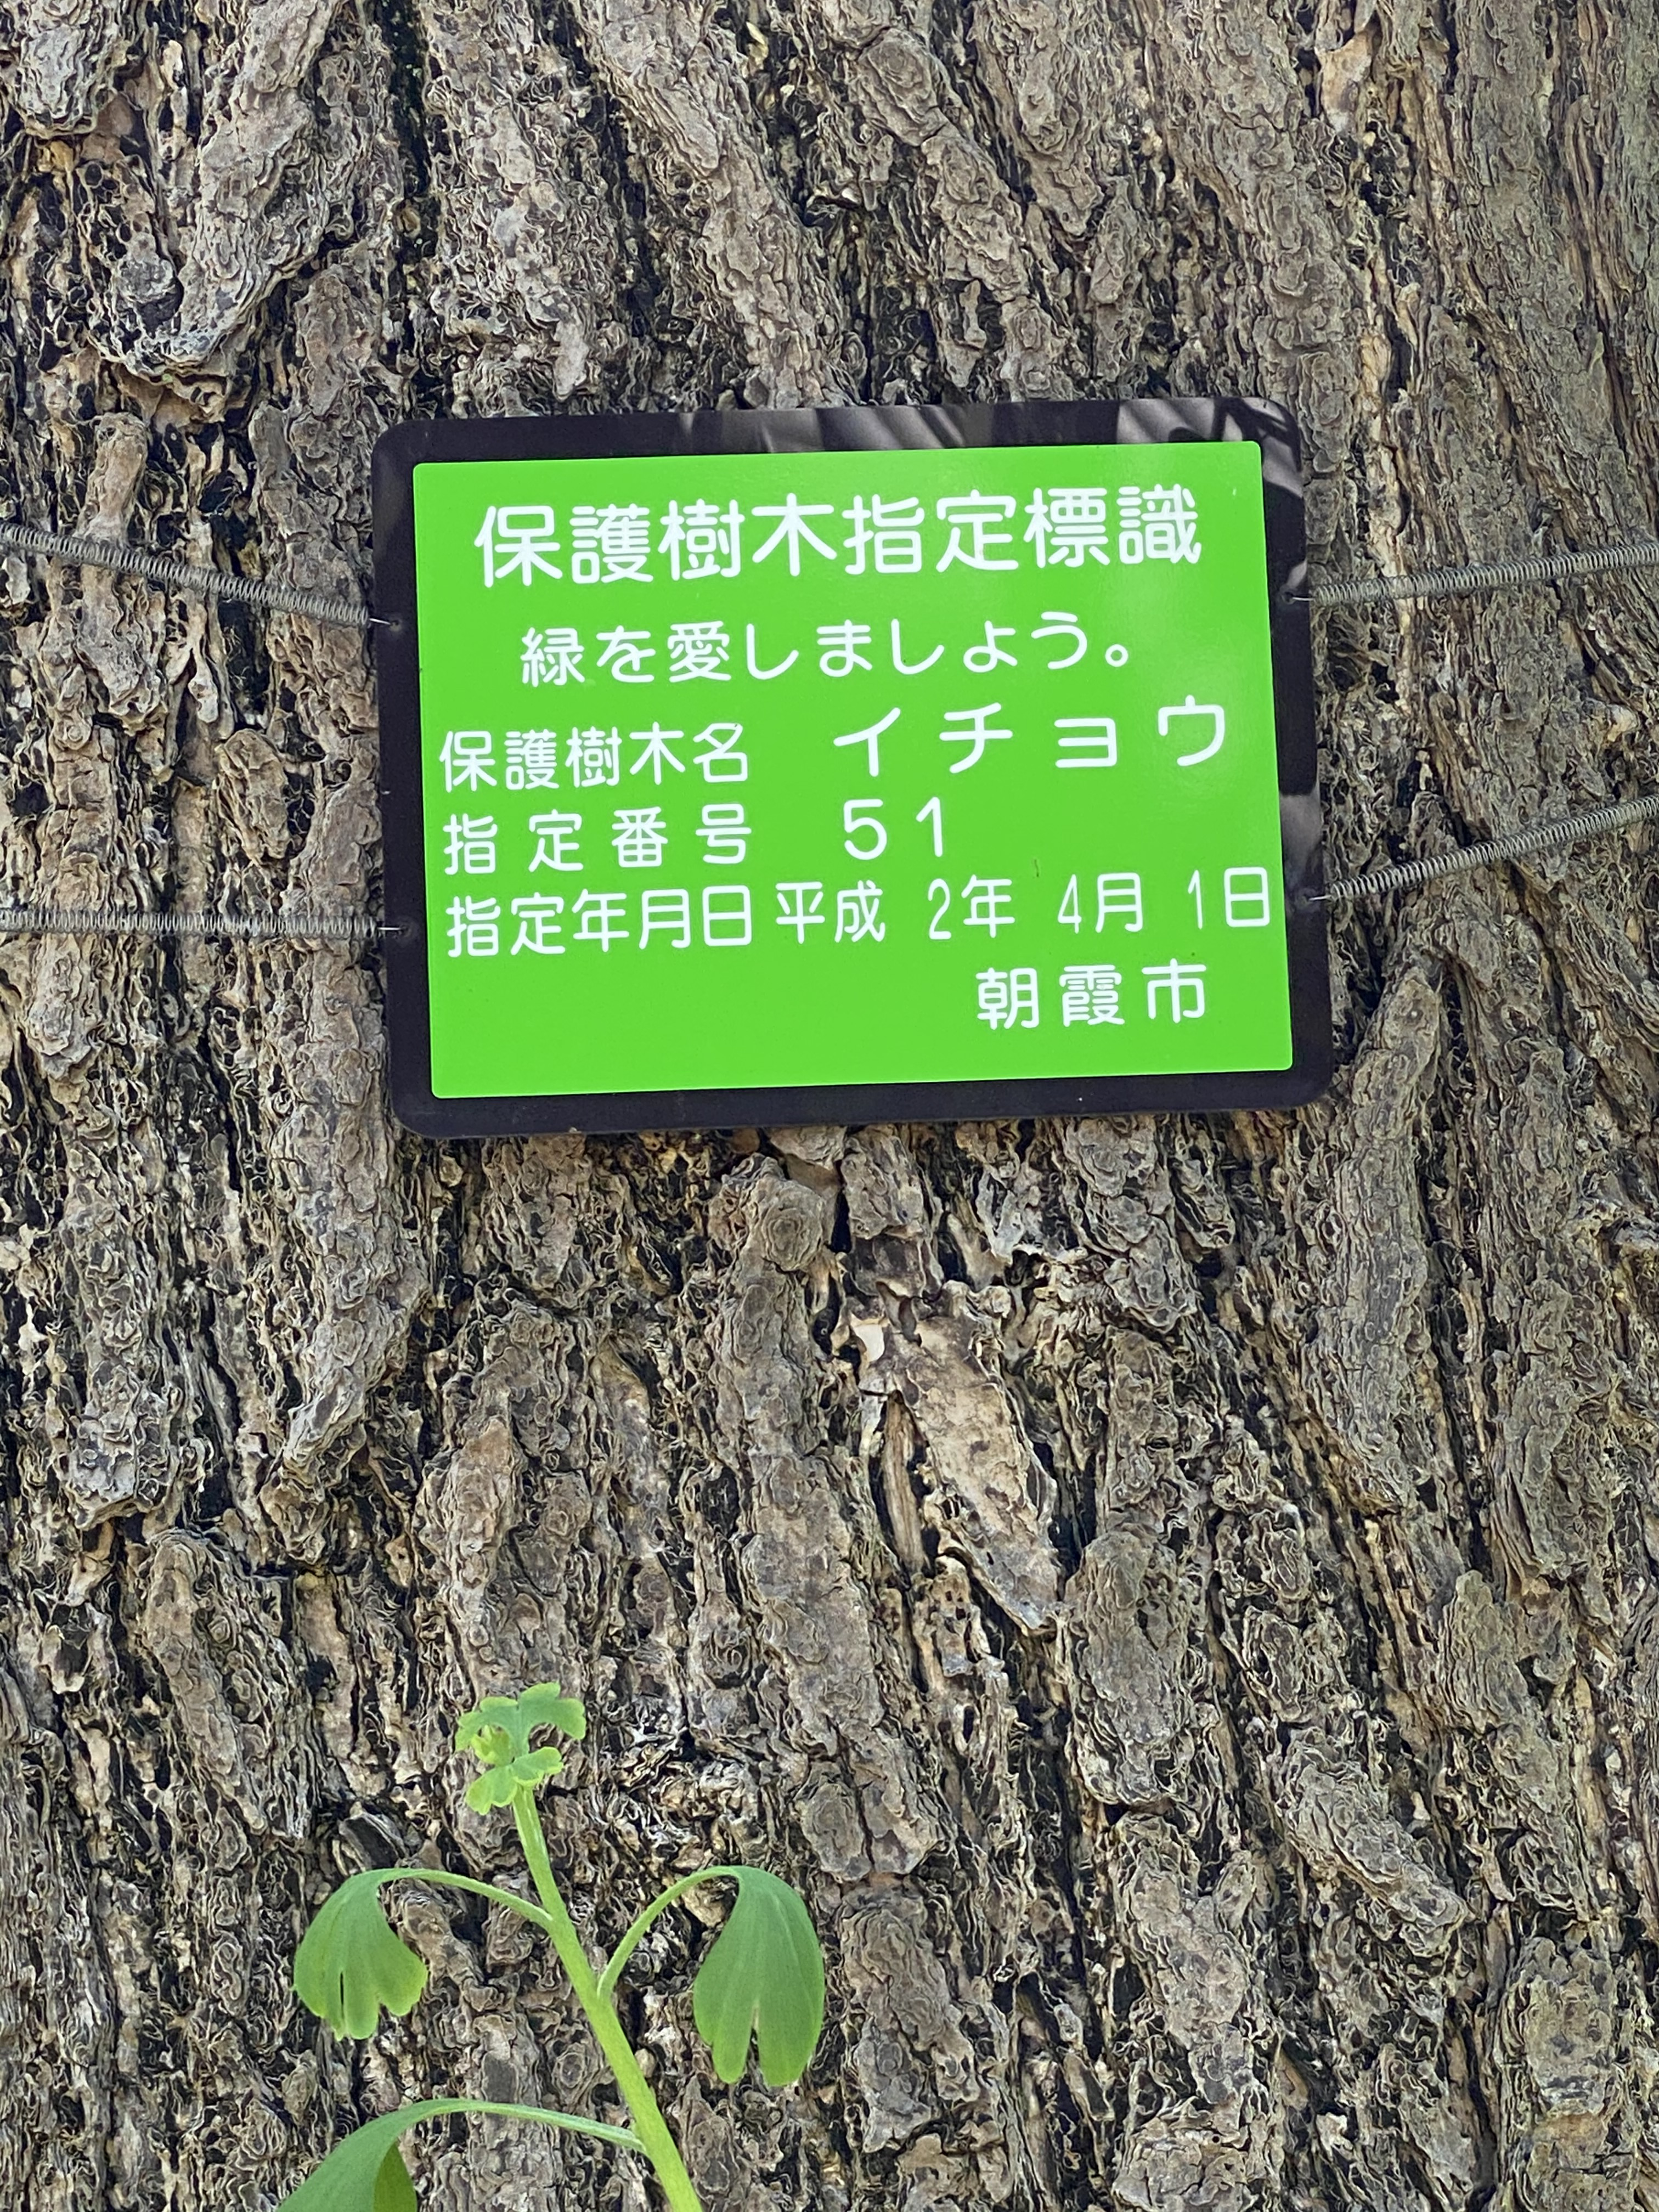 保護樹木指定標識　緑を愛しましょう。保護樹木名　イチョウ　指定番号　５１　指定年月日平成2年4月1日　朝霞市